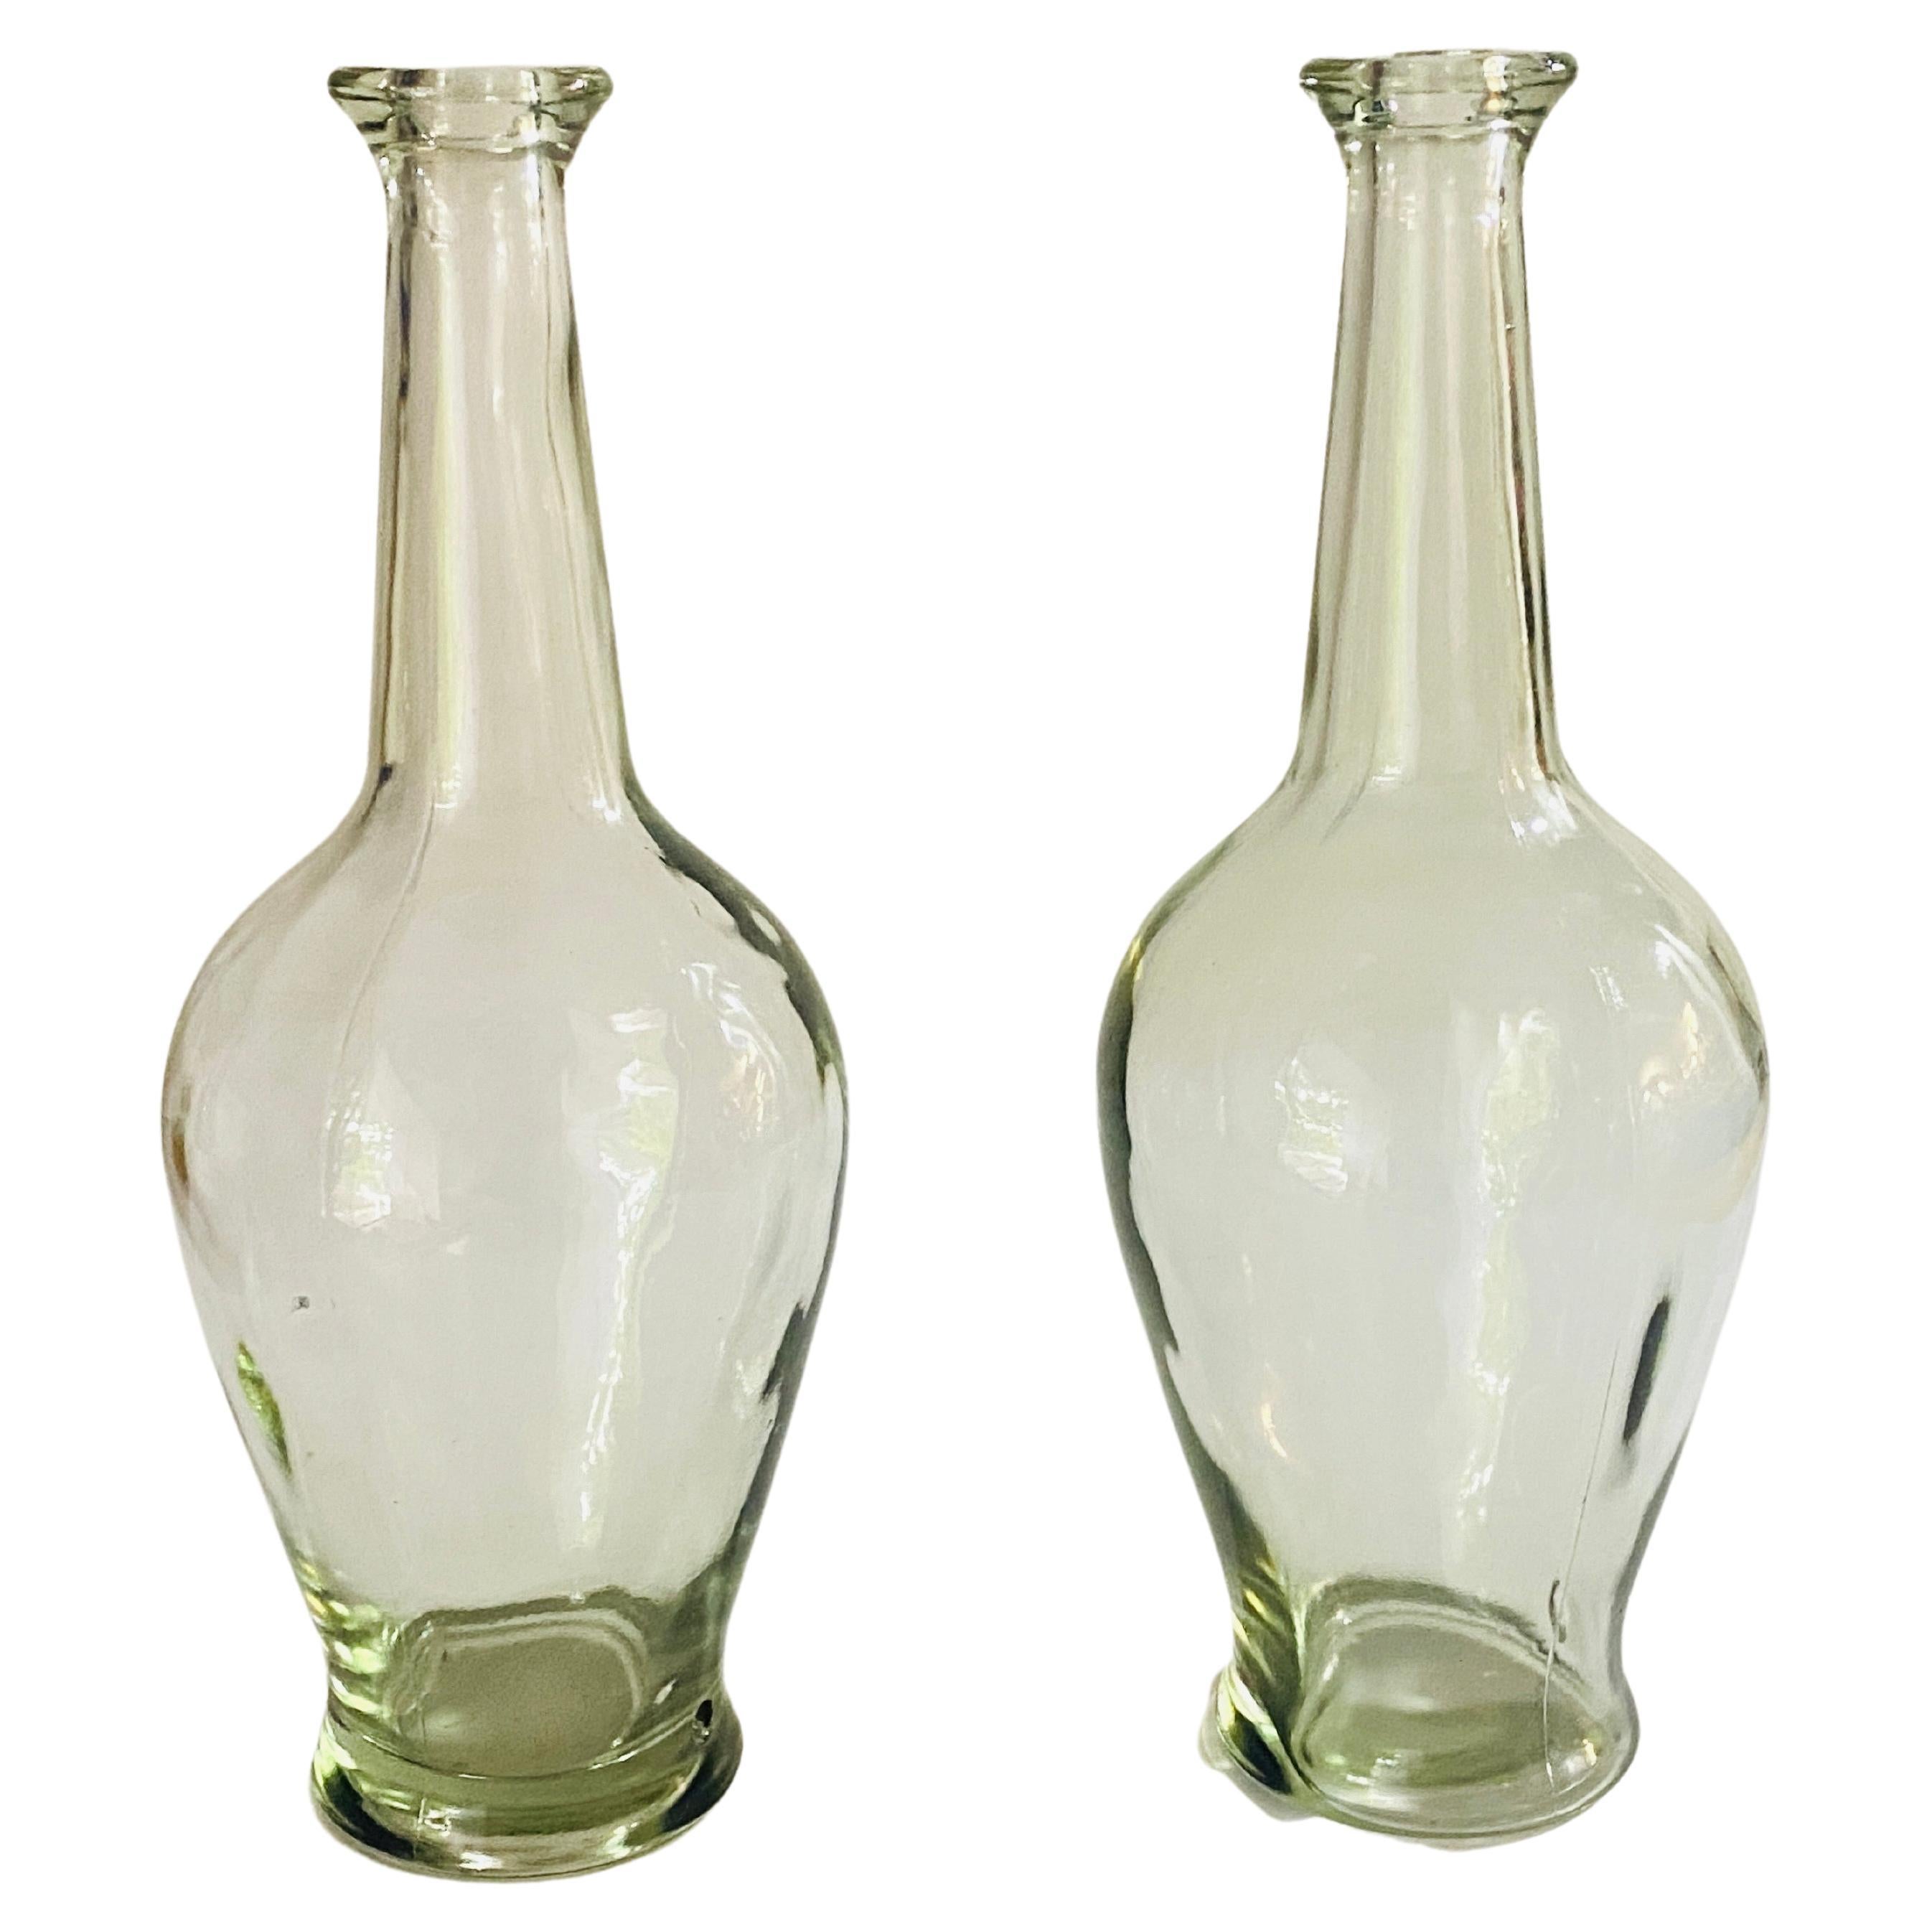 Diese dekorativen Glasflaschen wurden um 1960 in Frankreich hergestellt. Sie sind typisch französisch procencial Style Form, in einer transparenten Farbe.